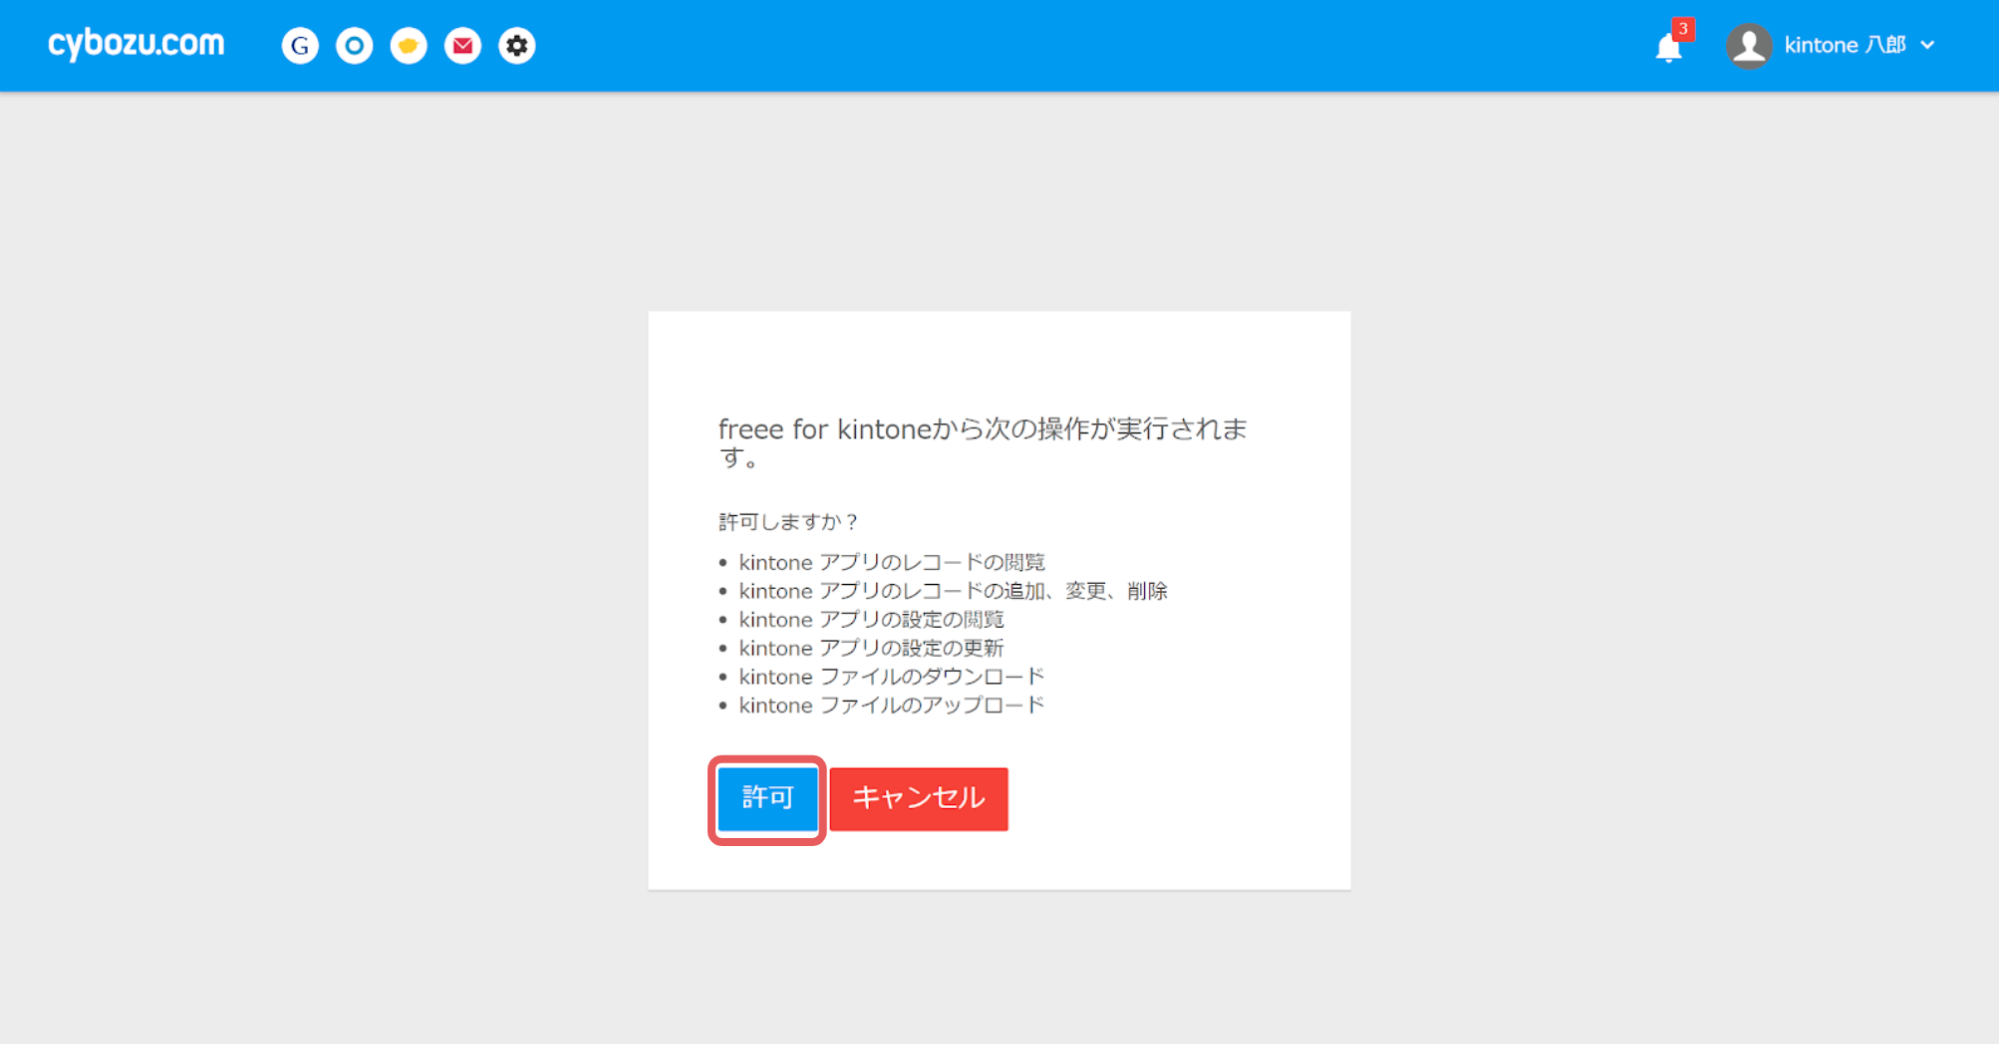 cybozu.comの認証画面のスクリーンショット